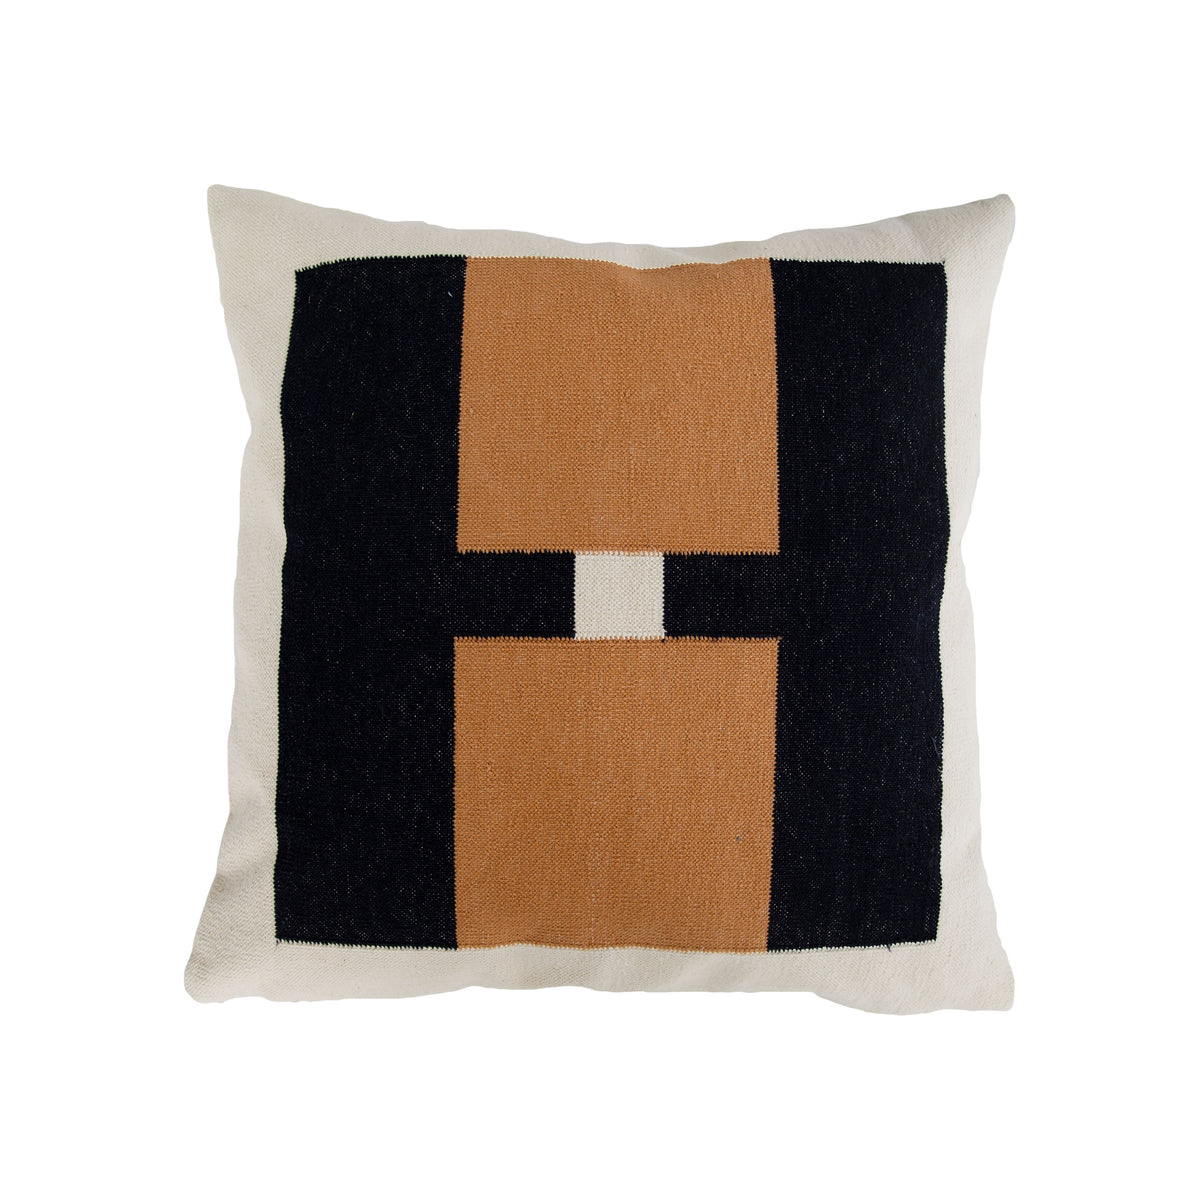 Modern Home Decor - Decorative Throw Pillows - Leah Singh – Leah Singh Inc